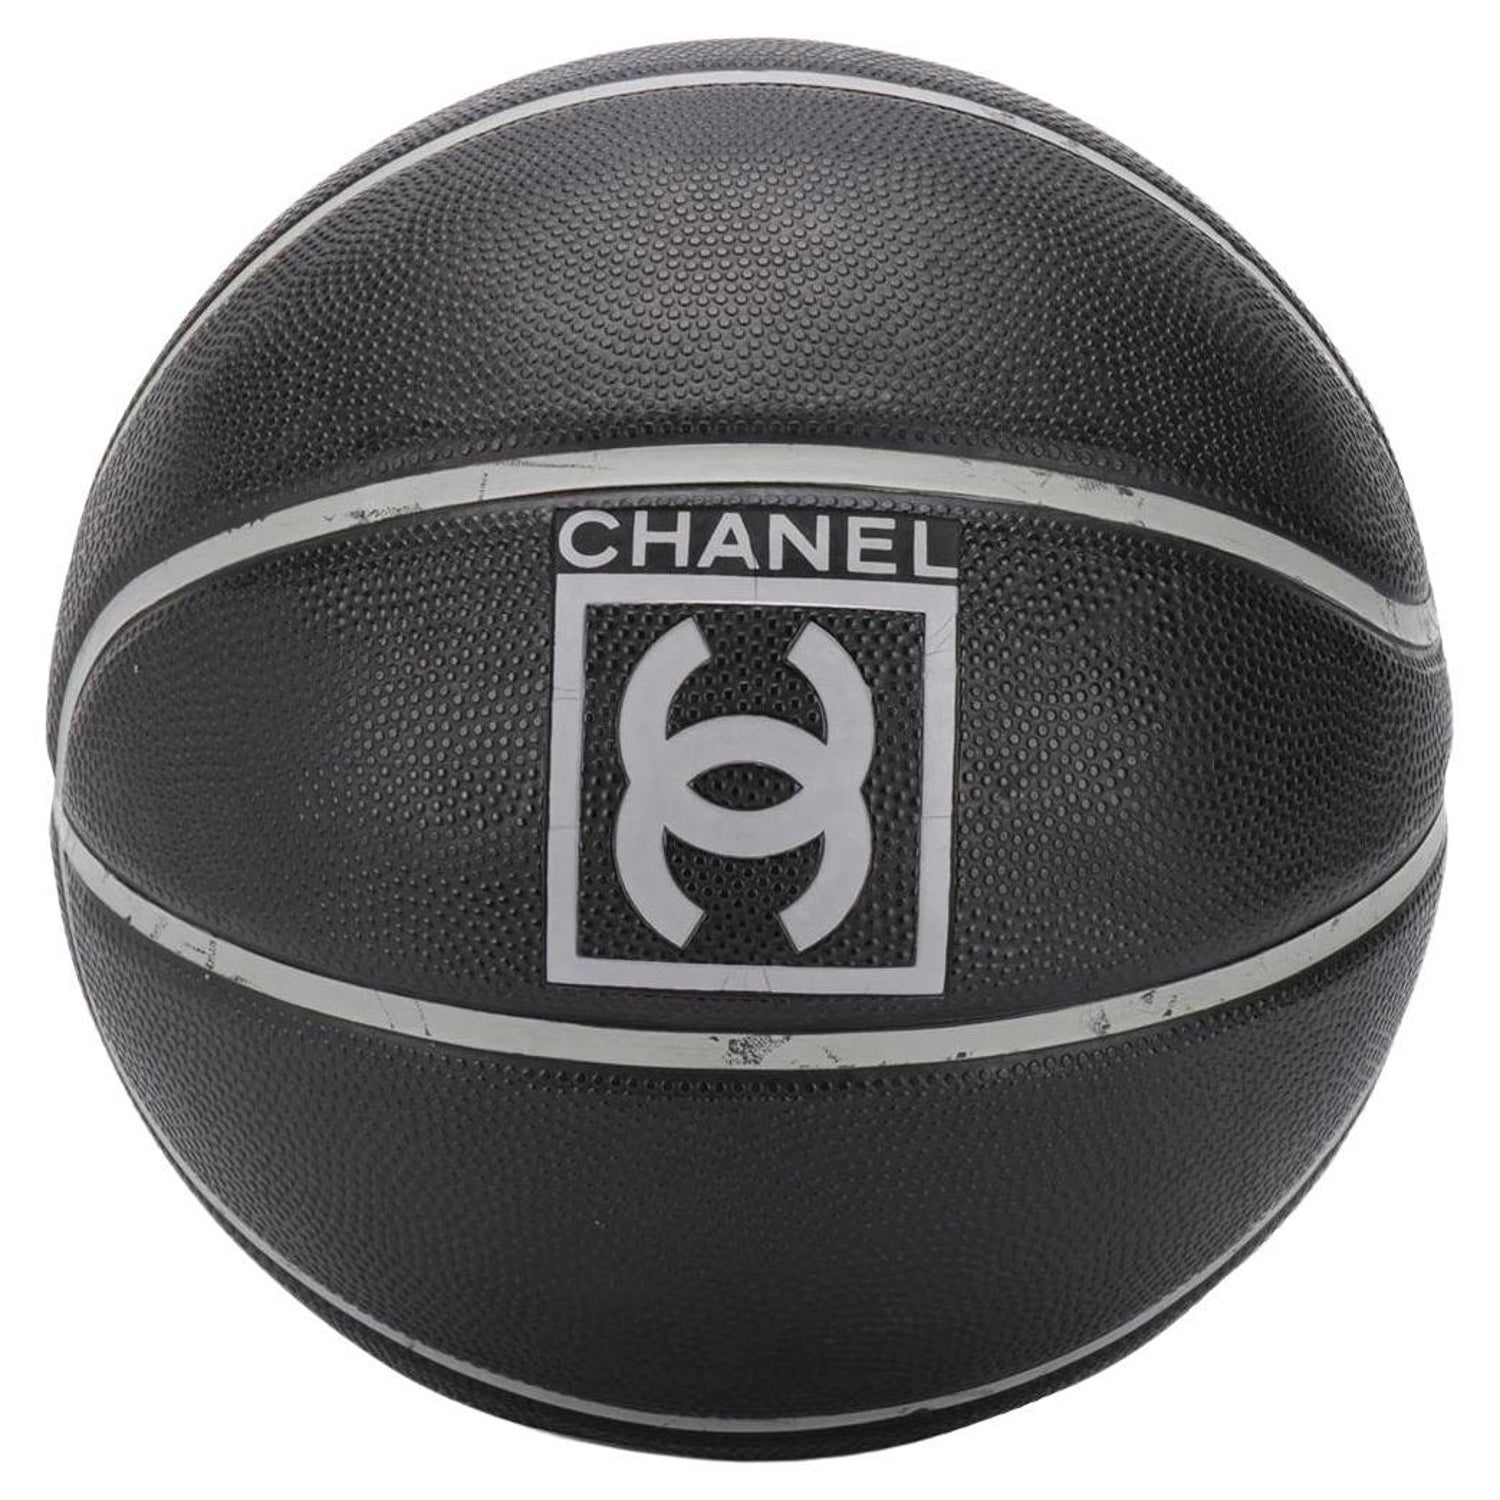 Chanel Basketball - 8 For Sale on 1stDibs | basketball chanel, chanel  basketboll, basketboll chanel